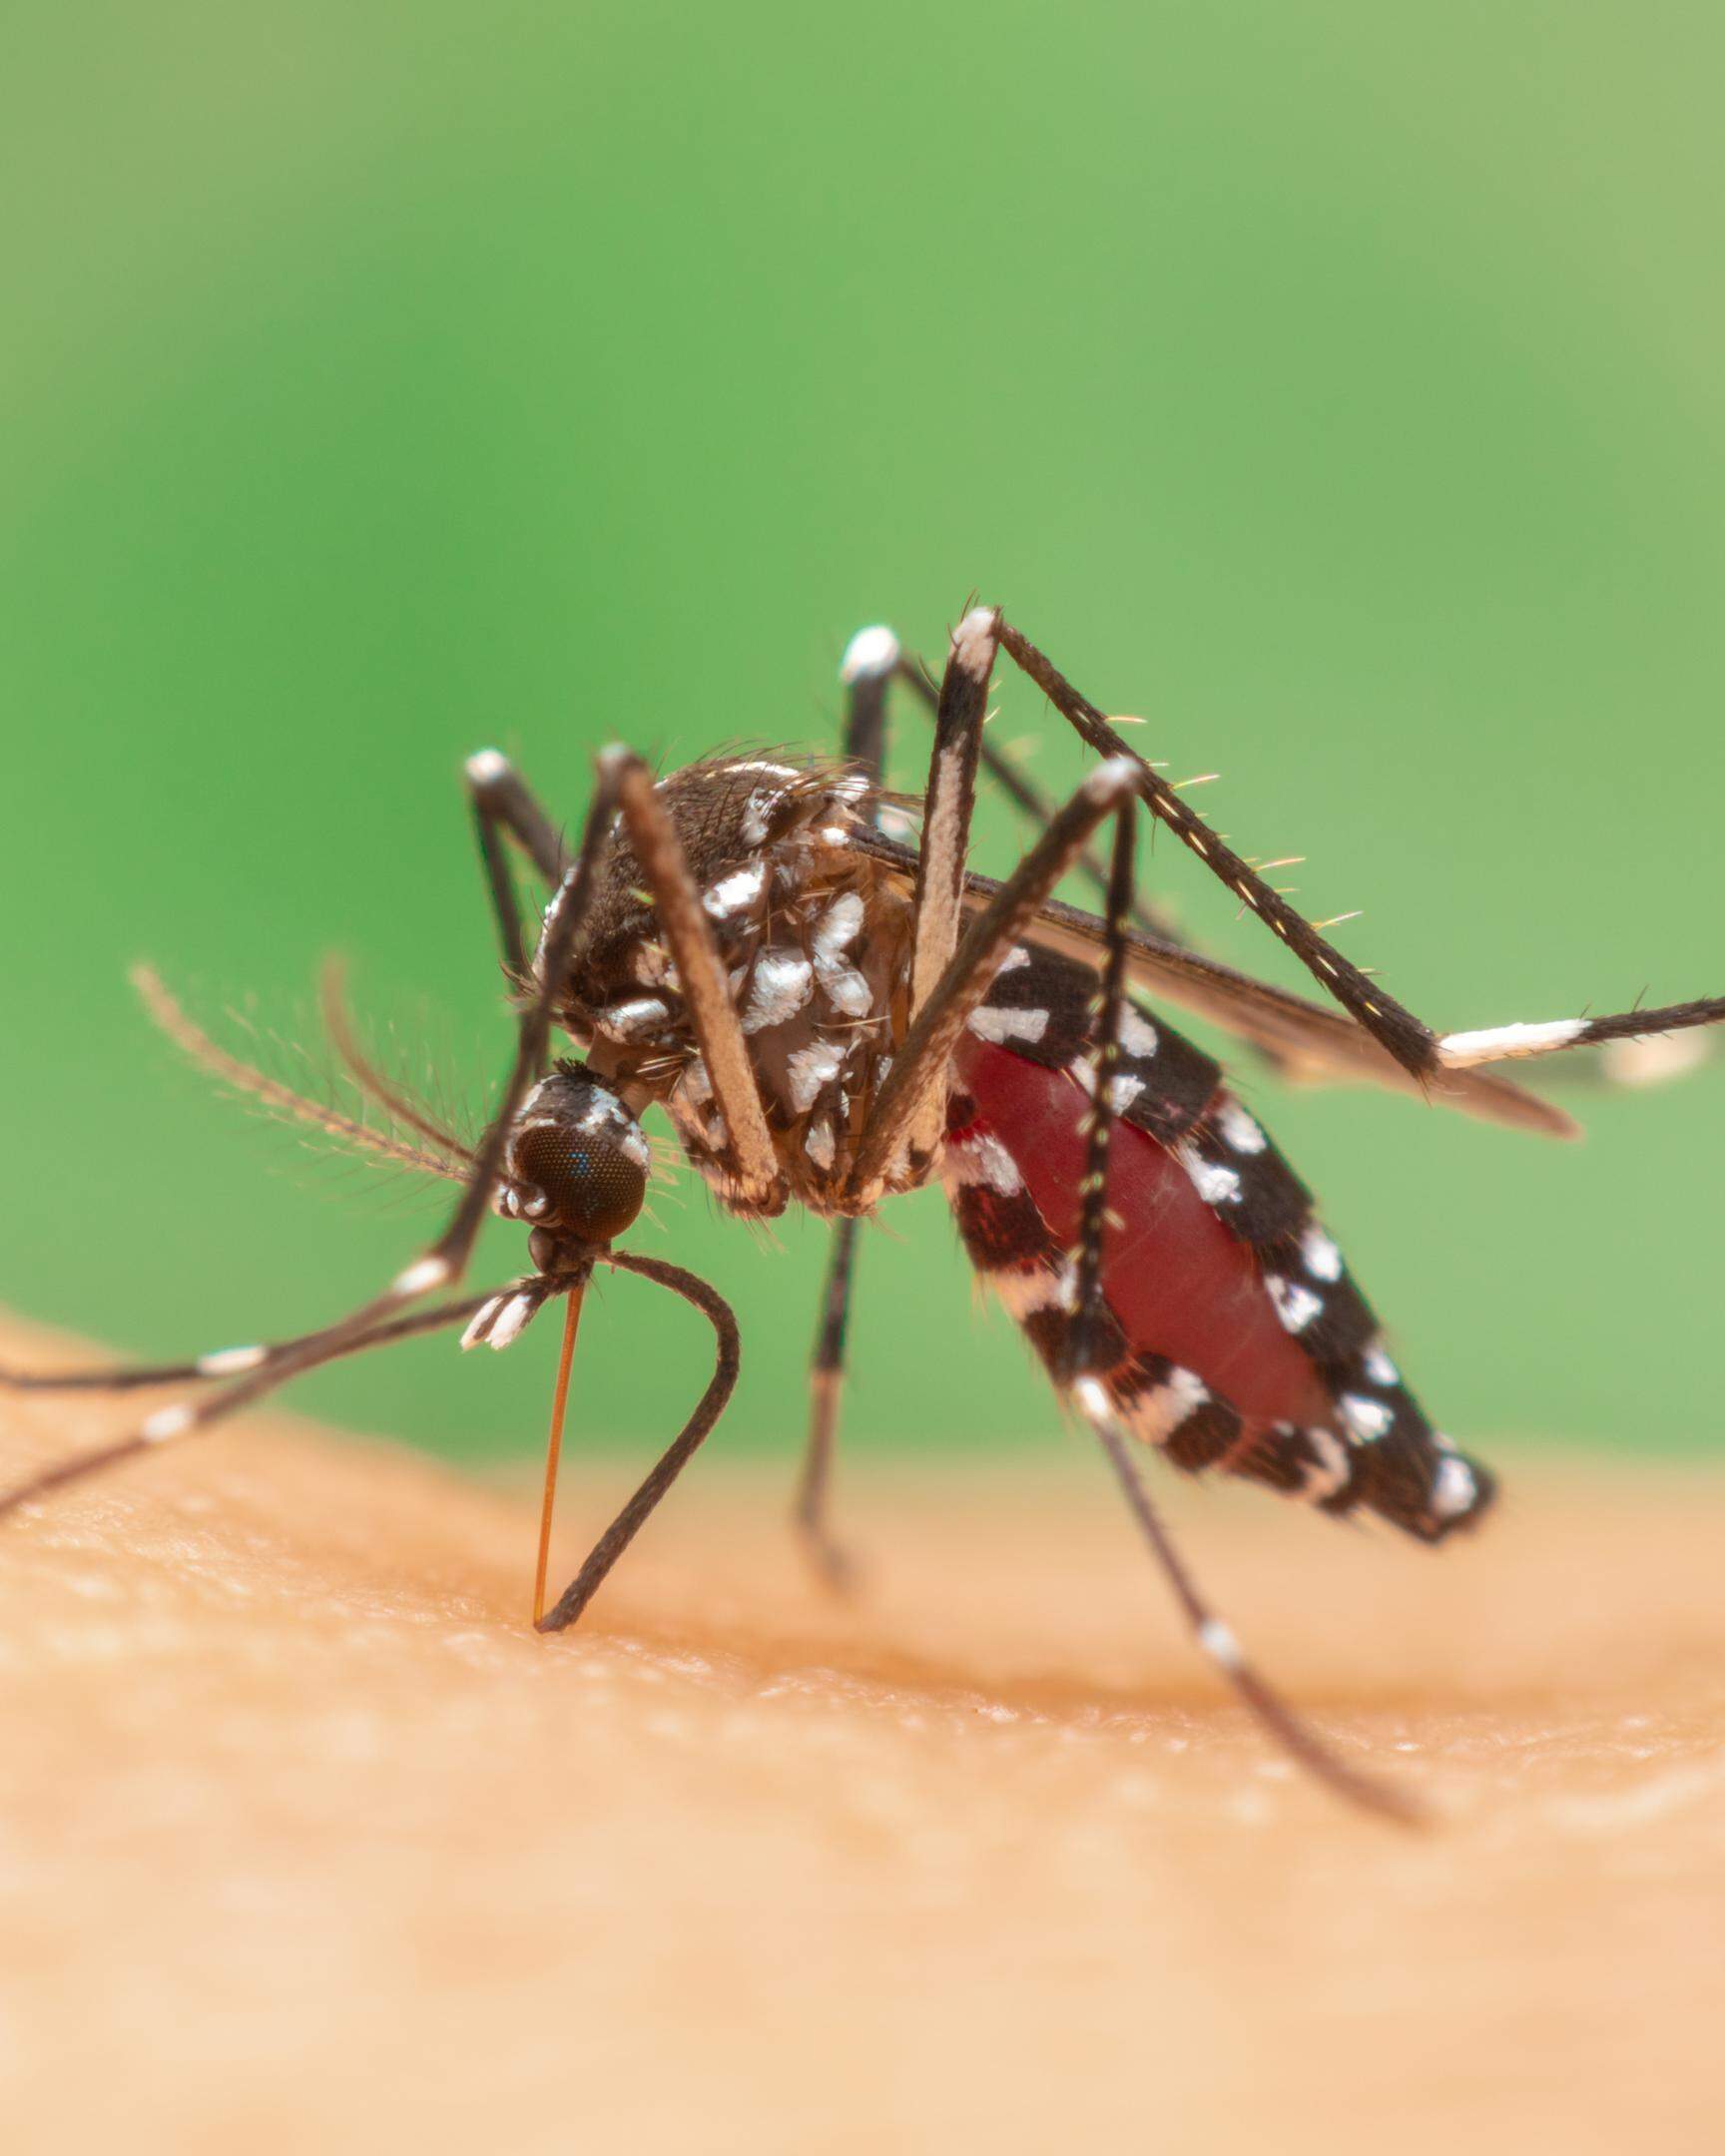 Die luxemburgische Regierung hat ein System zur Überwachung der Tigermückenpopulationen eingerichtet, da diese verschiedene Krankheiten übertragen können.  